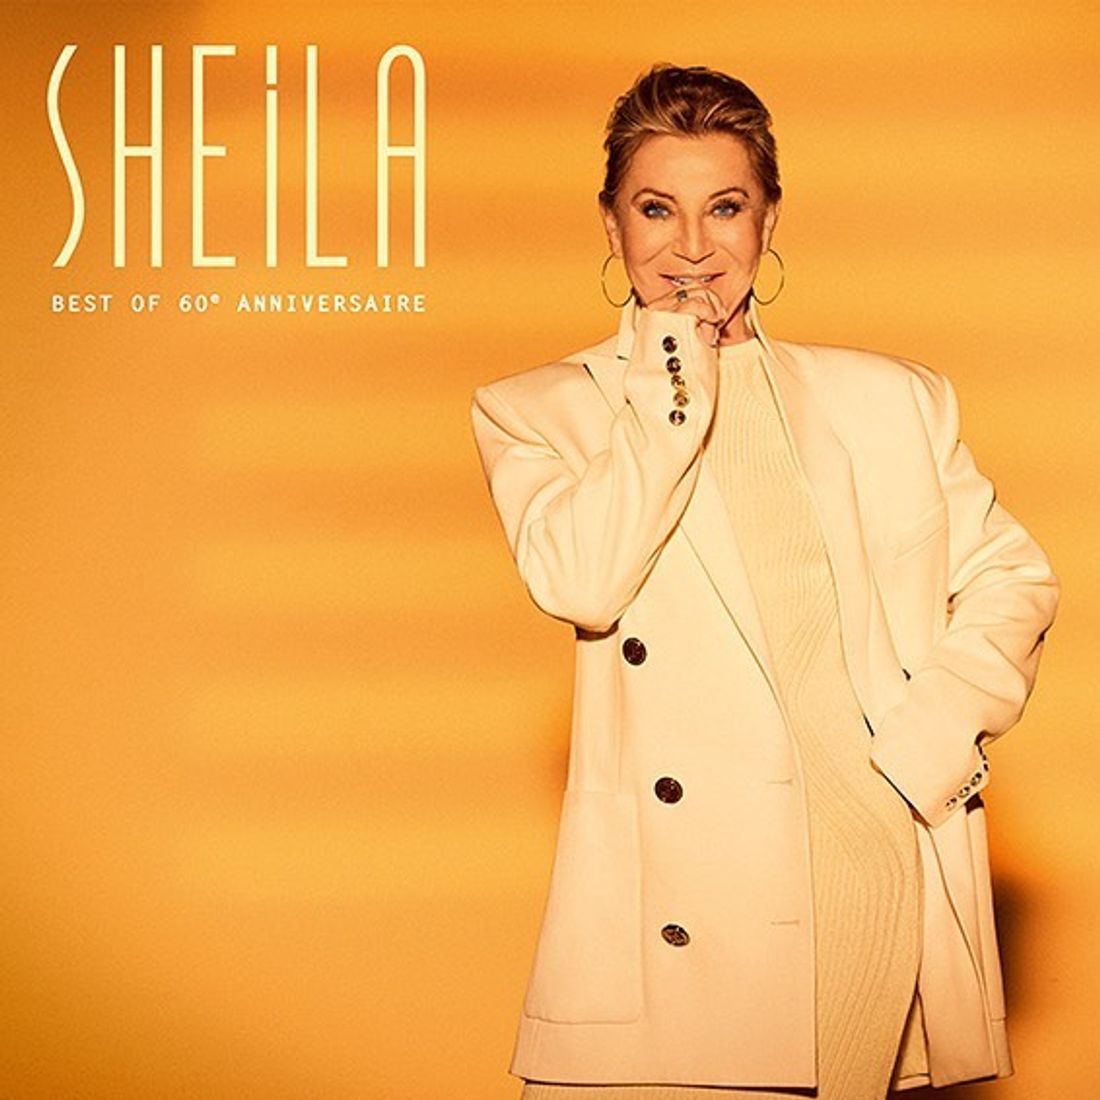 Jaquette du best-of de Sheila « Sheila - Best of 60ème anniversaire »